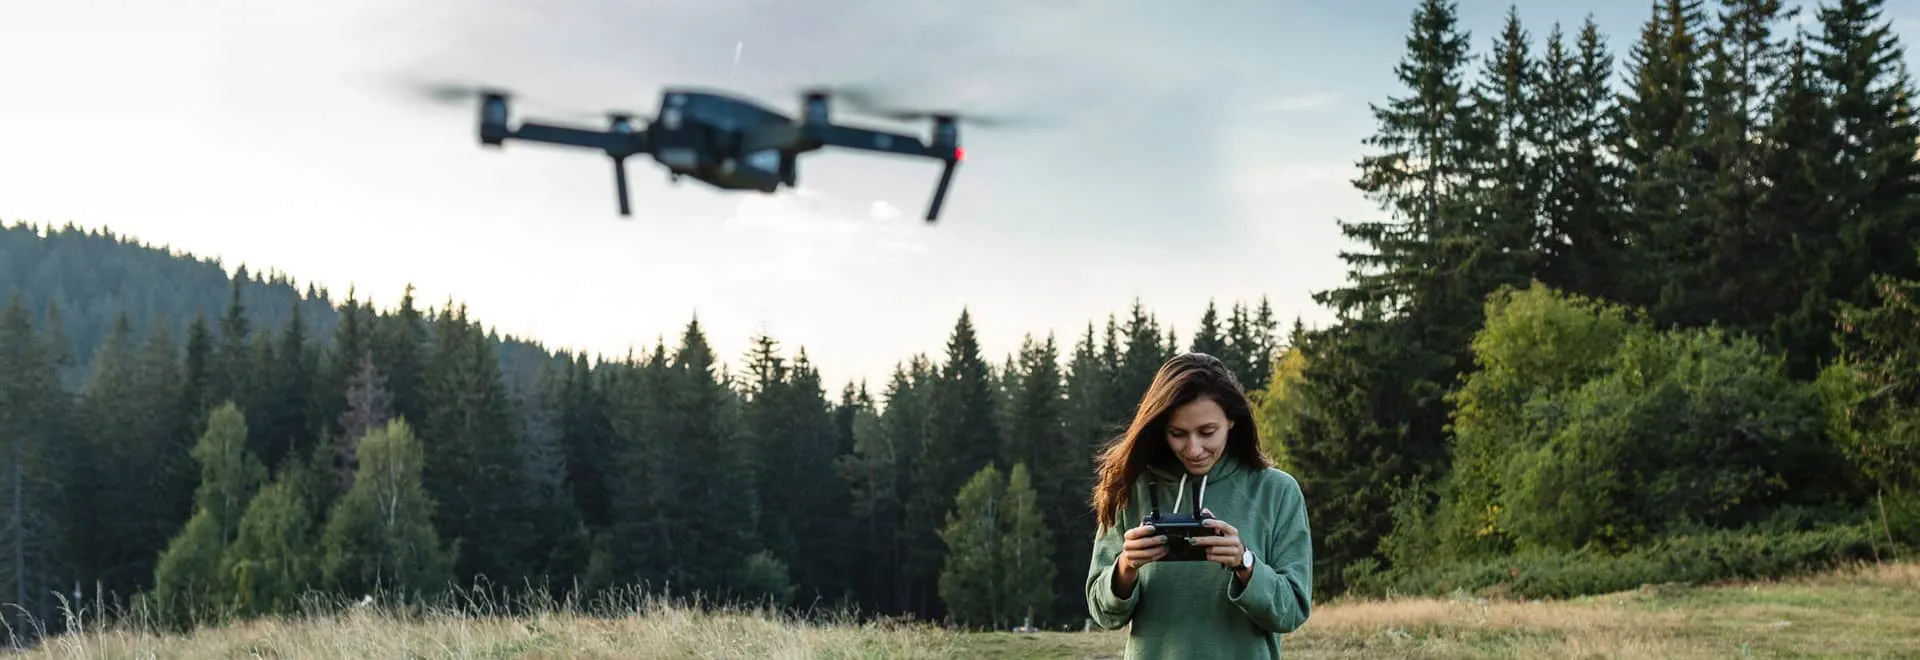 Frau steuert Drohne auf einer großen Wiese vor Wald